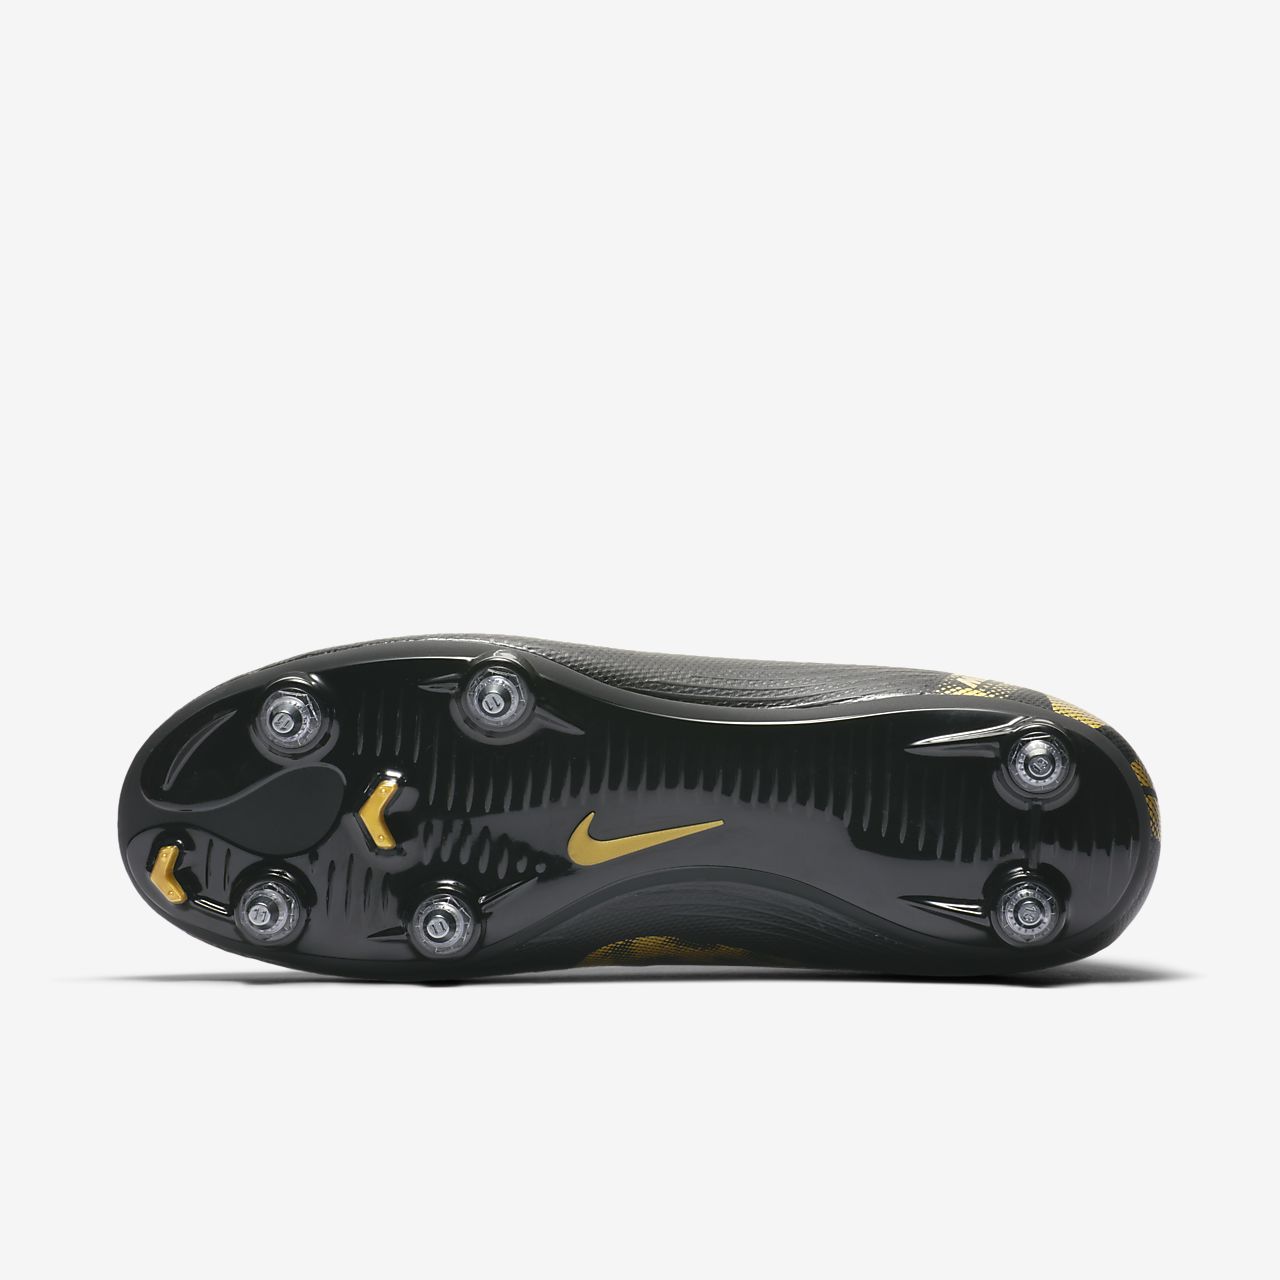 Nike Mercurial Superfly 6 Elite AG Black Total Orange.